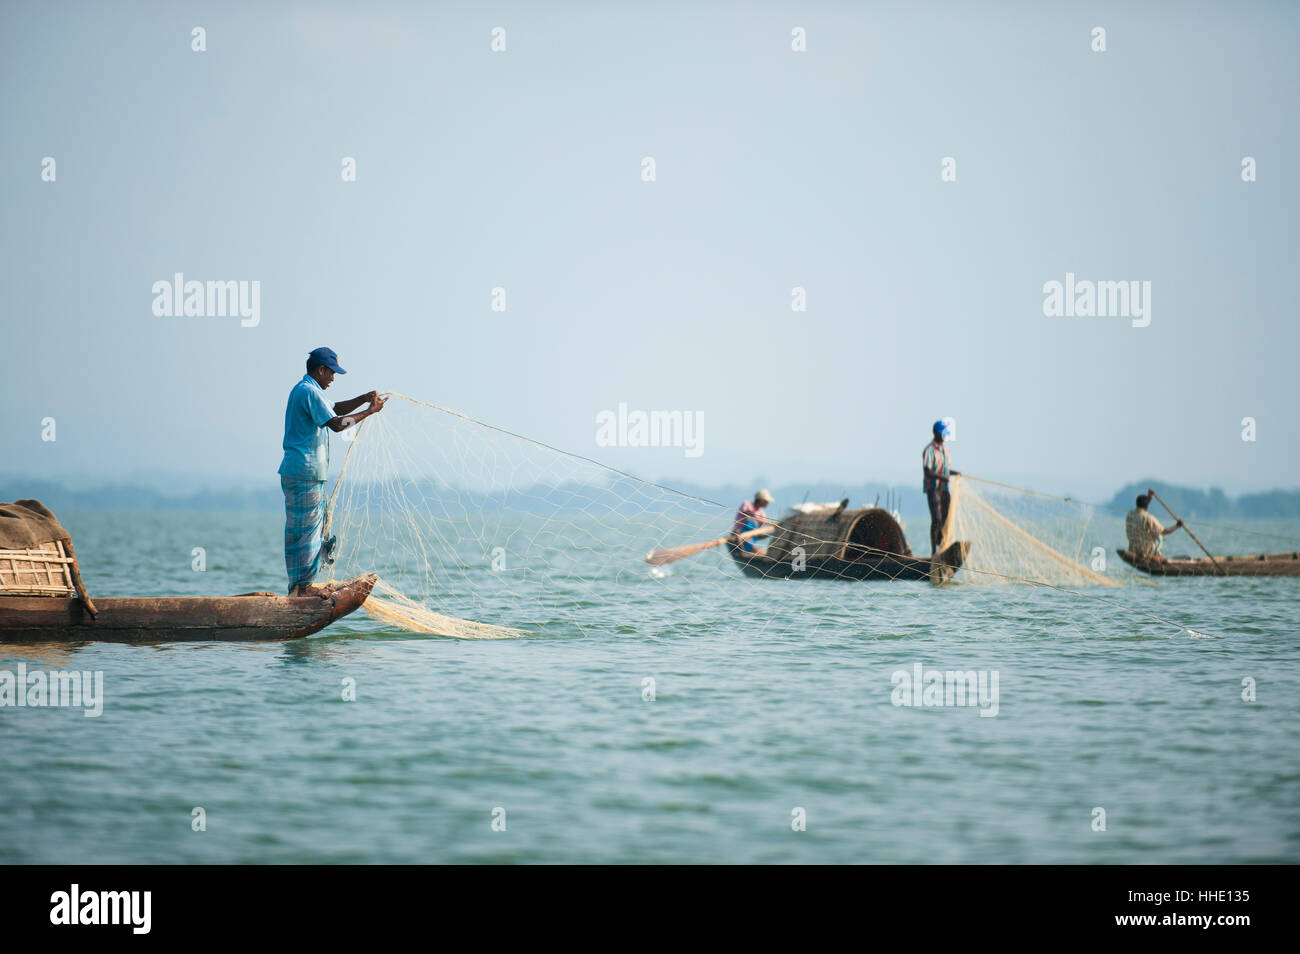 Fishing boats on Kaptai lake in the Chittagong Hill Tracts, Bangladesh Stock Photo